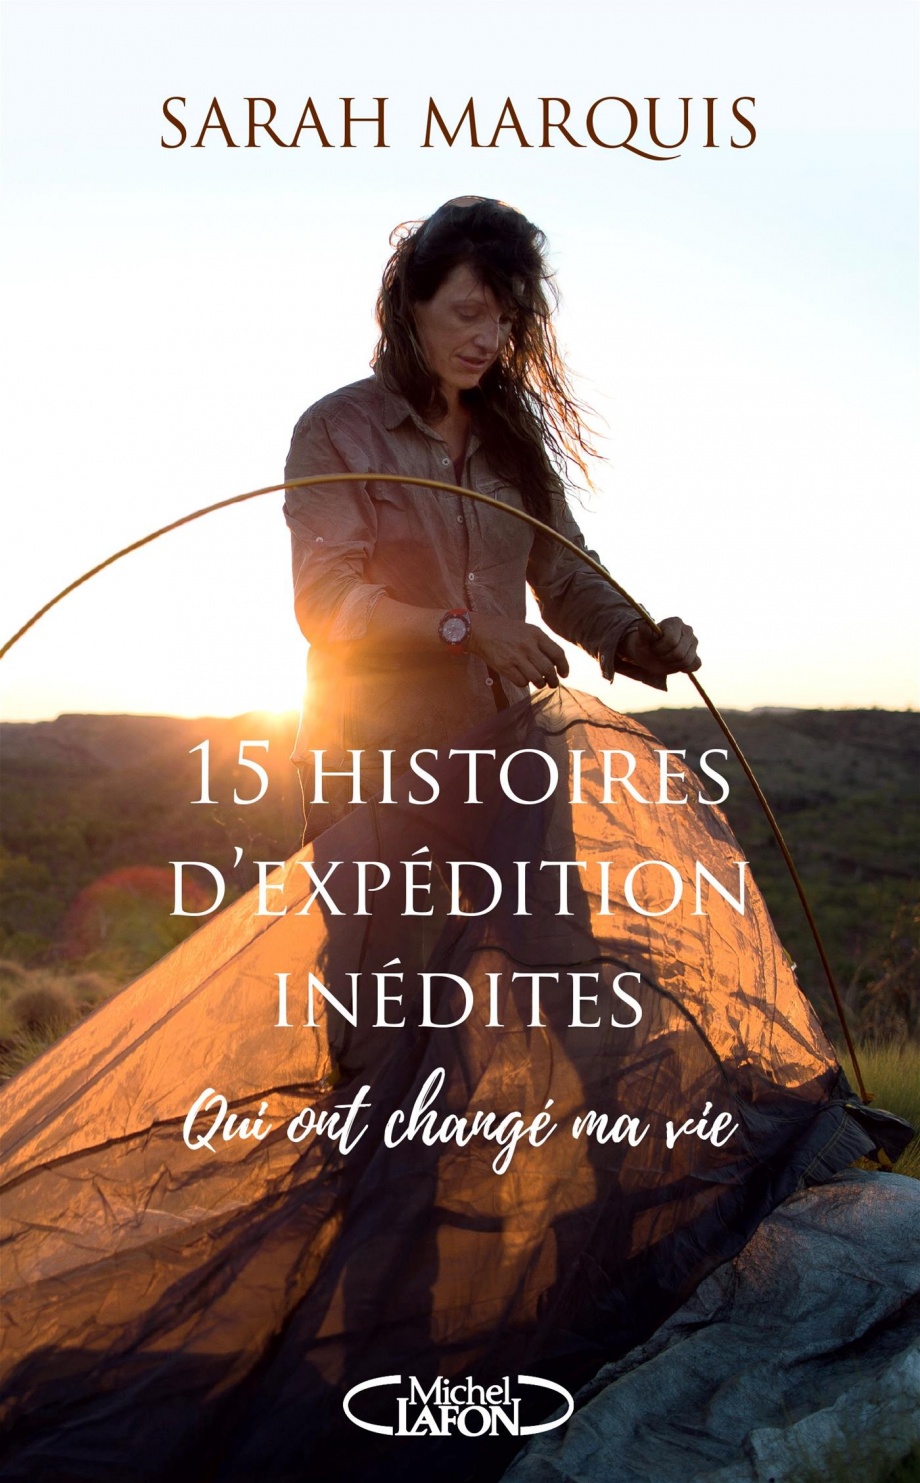 15 histoires d'expédition inédites qui ont changé ma vie de Sarah Marquis